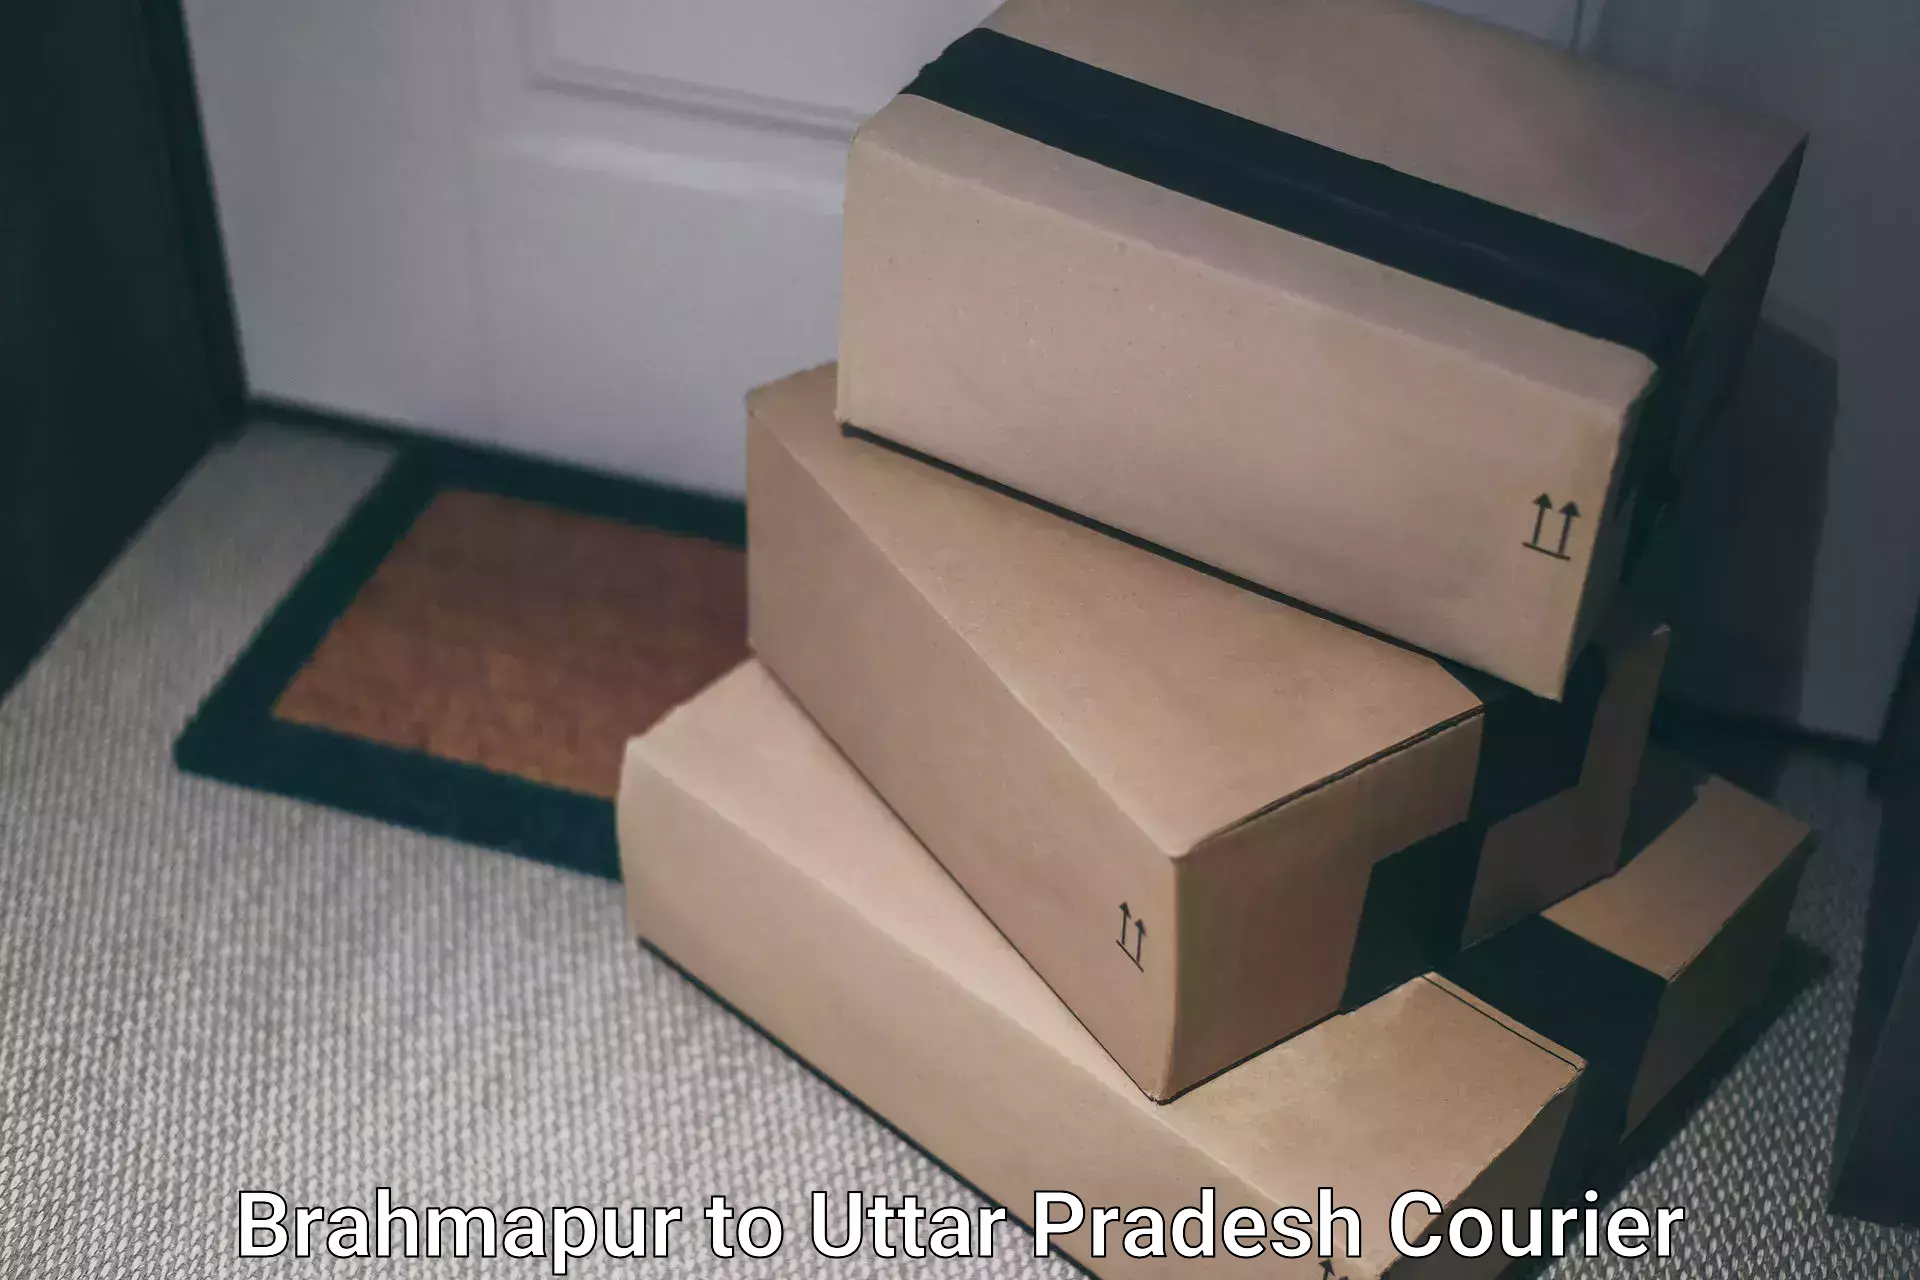 Courier service efficiency Brahmapur to Khatauli